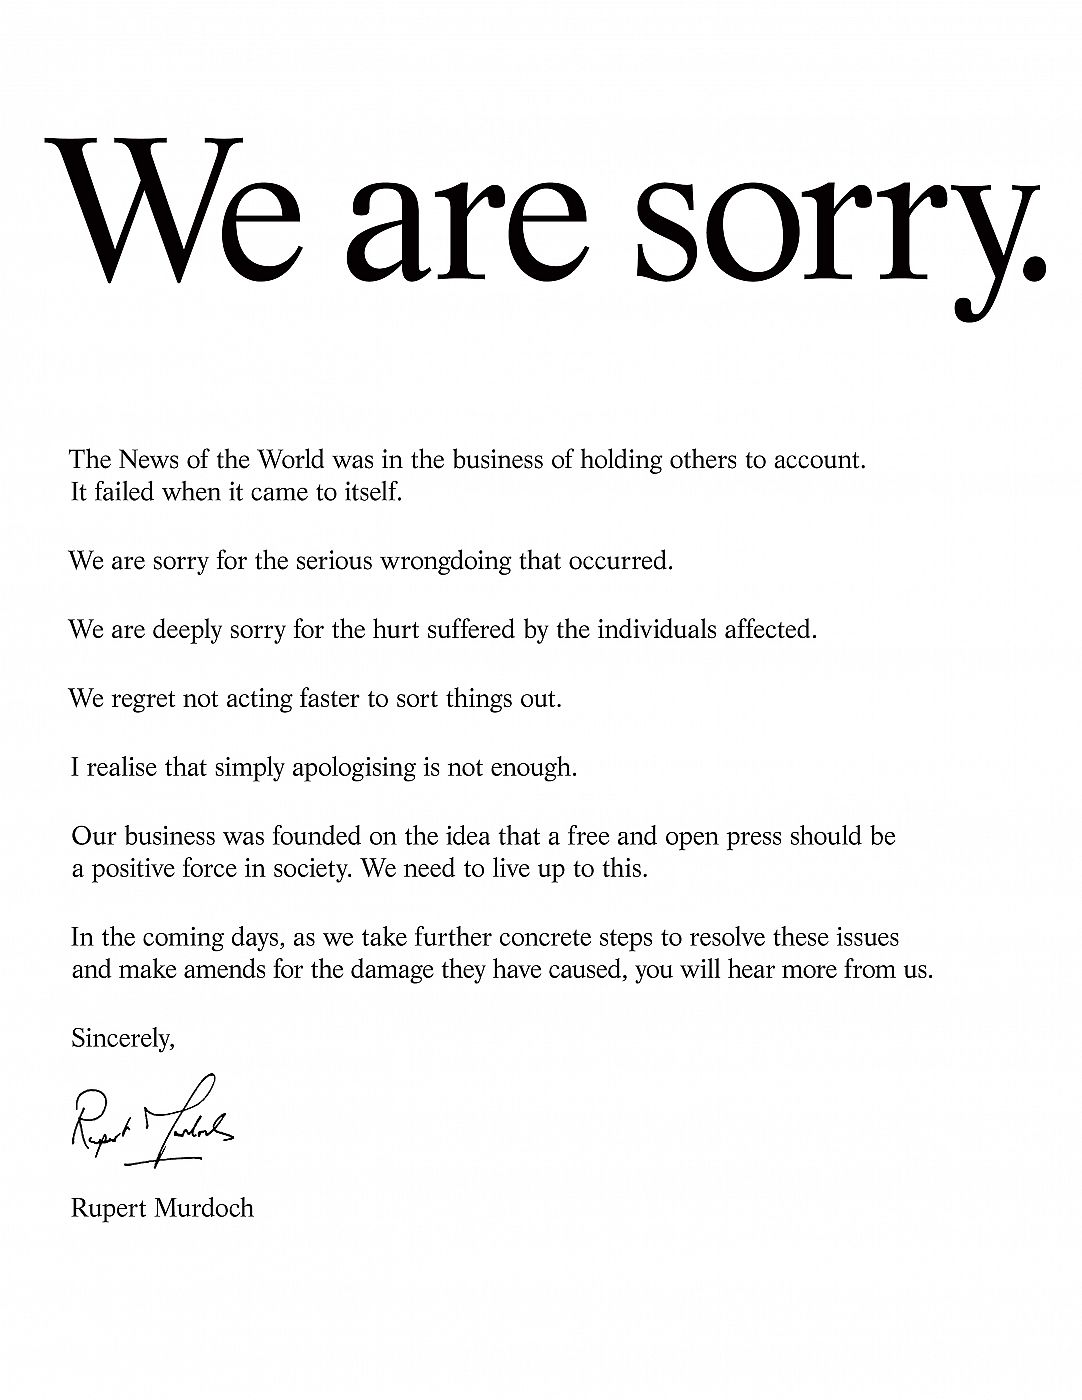 "We are sorry", dice el comunicado de Murdoch.